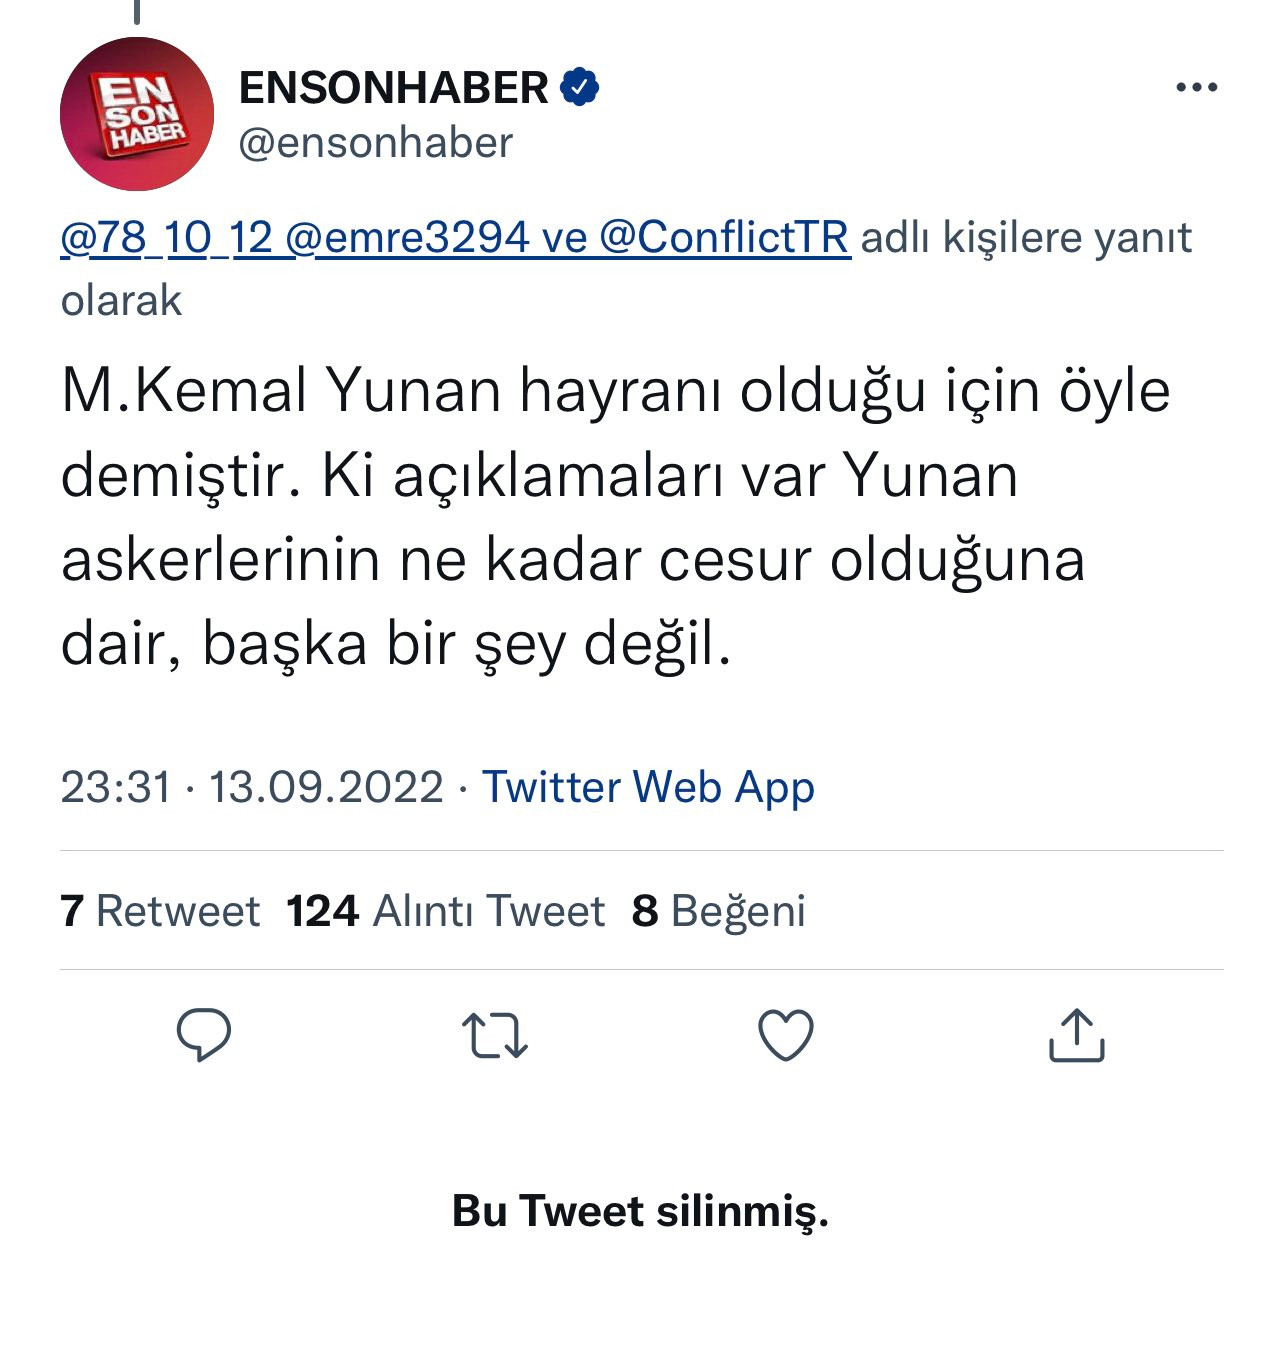 Resmi hesapta Mustafa Kemal Atatürk'e hakaret edilmişti: Ensonhaber'den açıklama - Resim : 1